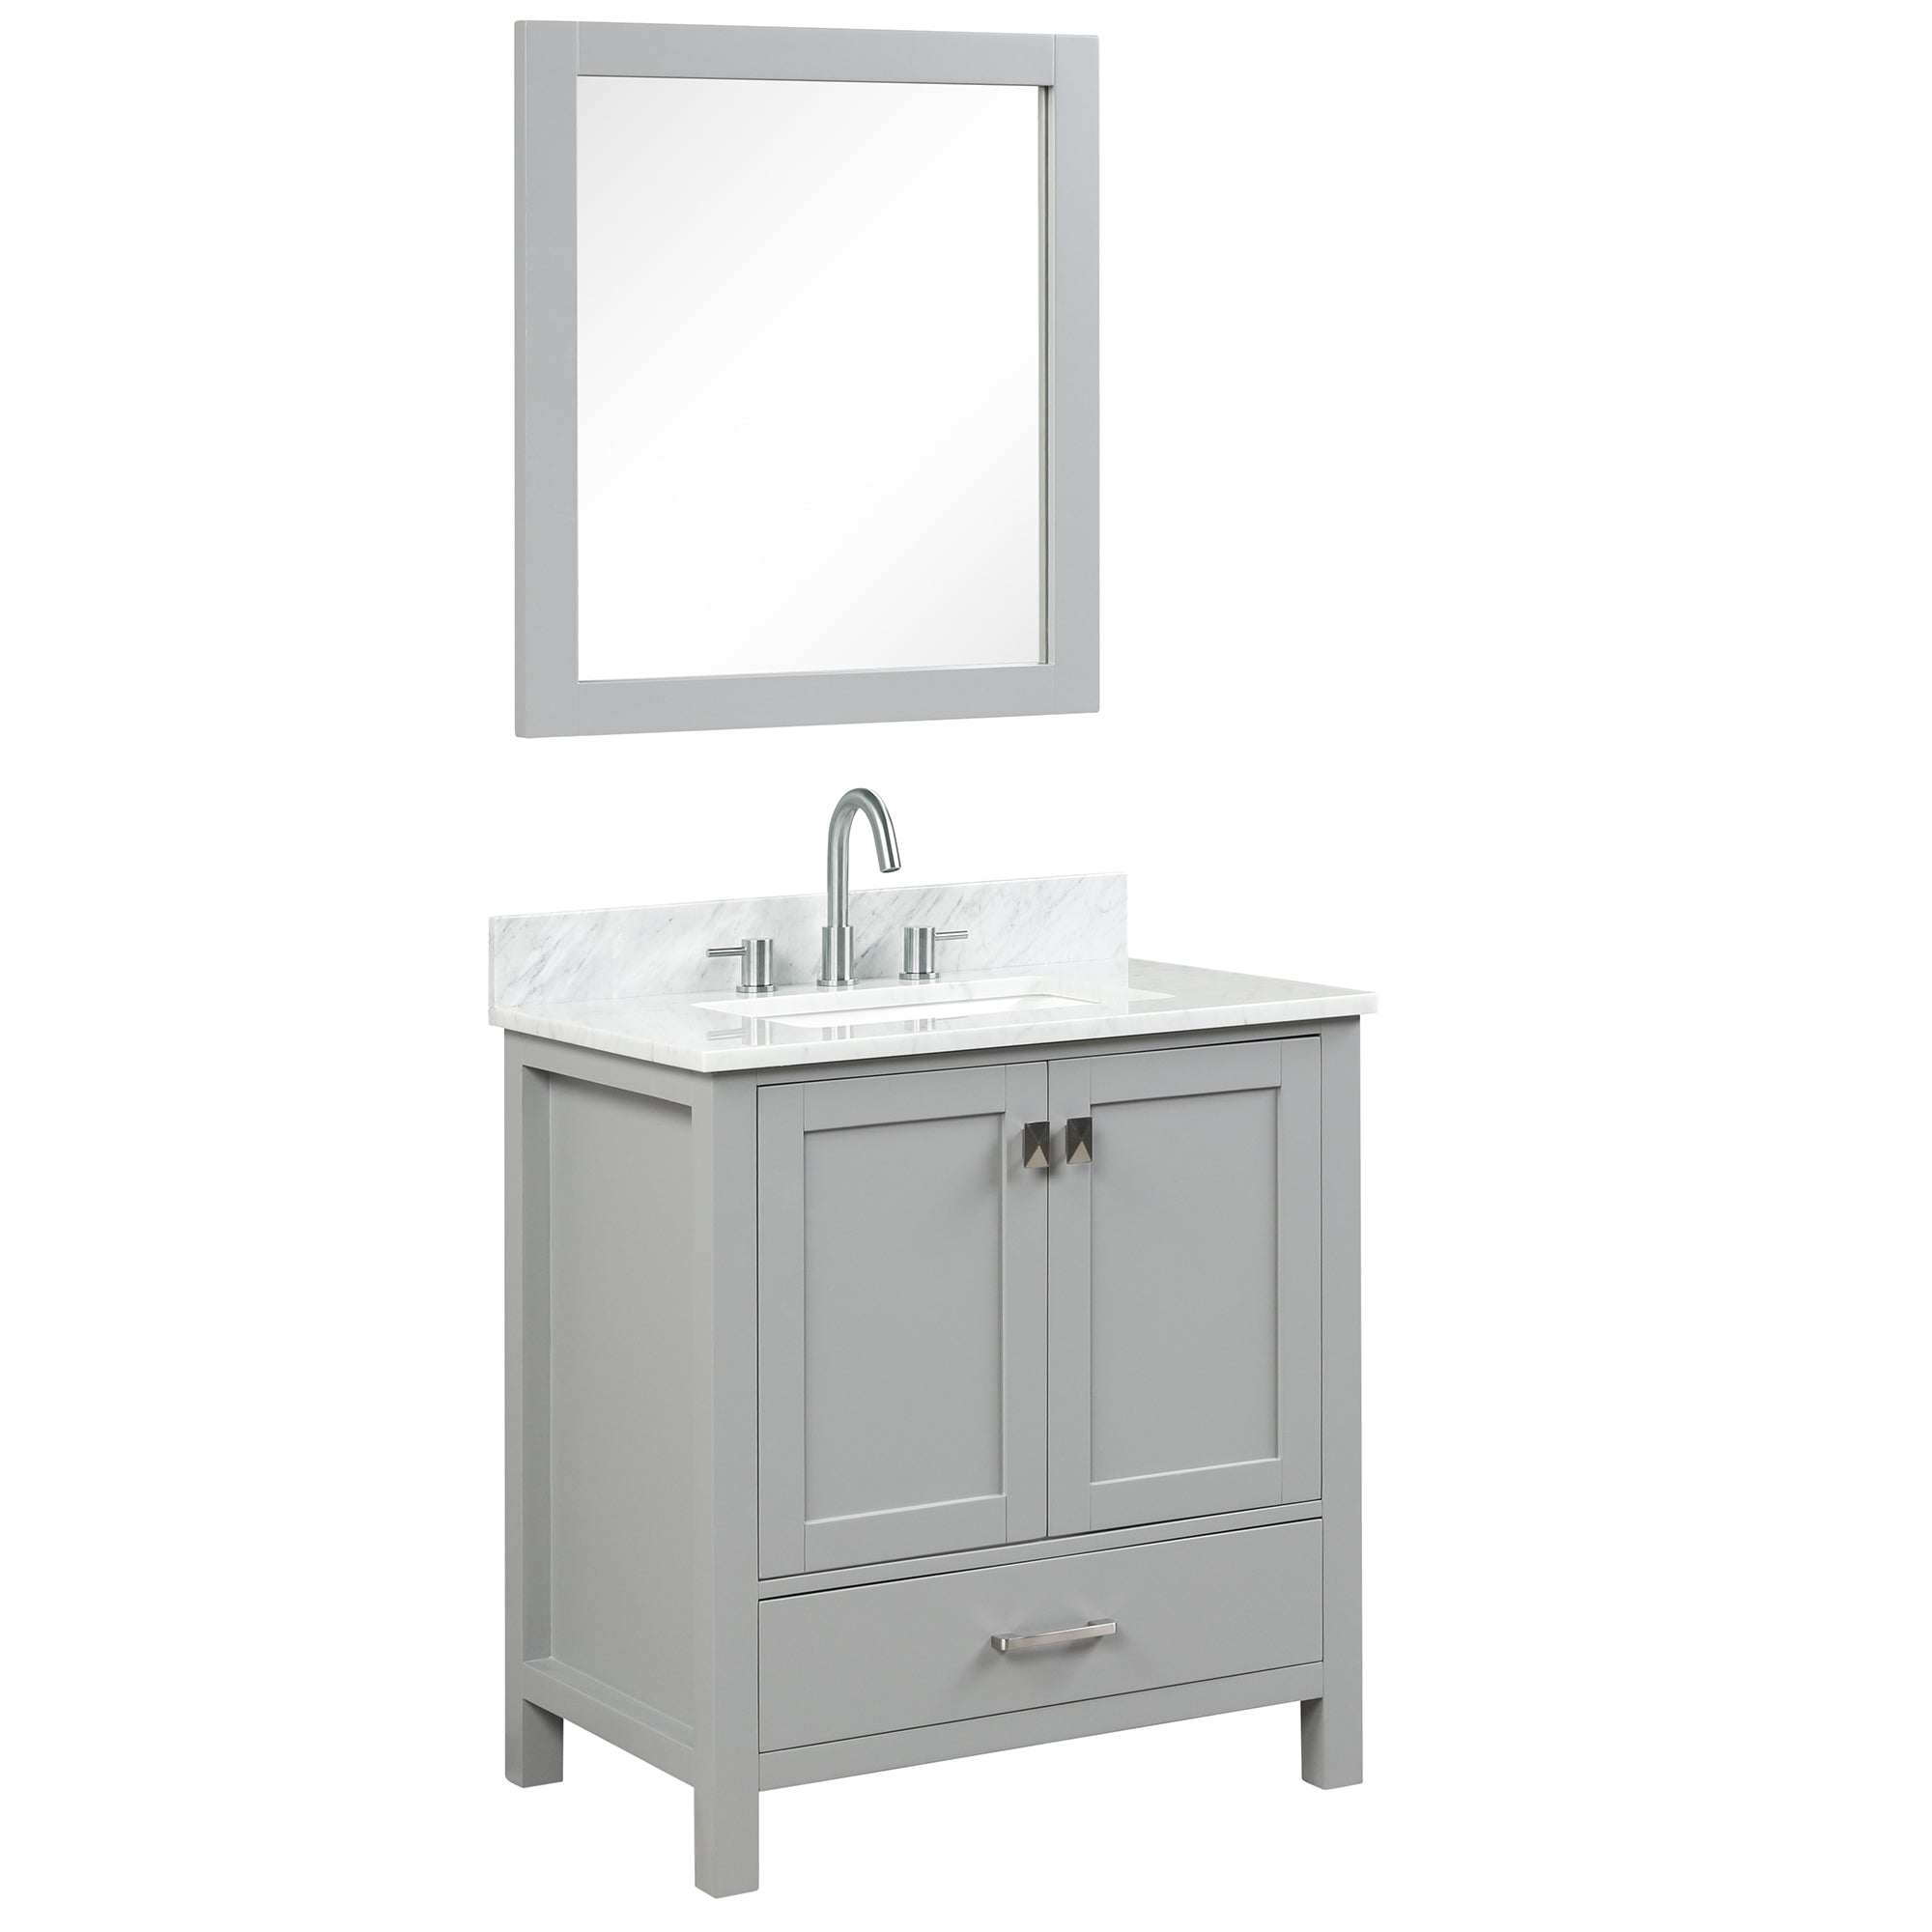 Geneva 30" Grey Bathroom Vanity with Marble Countertop - Contemporary Bathroom Vanity